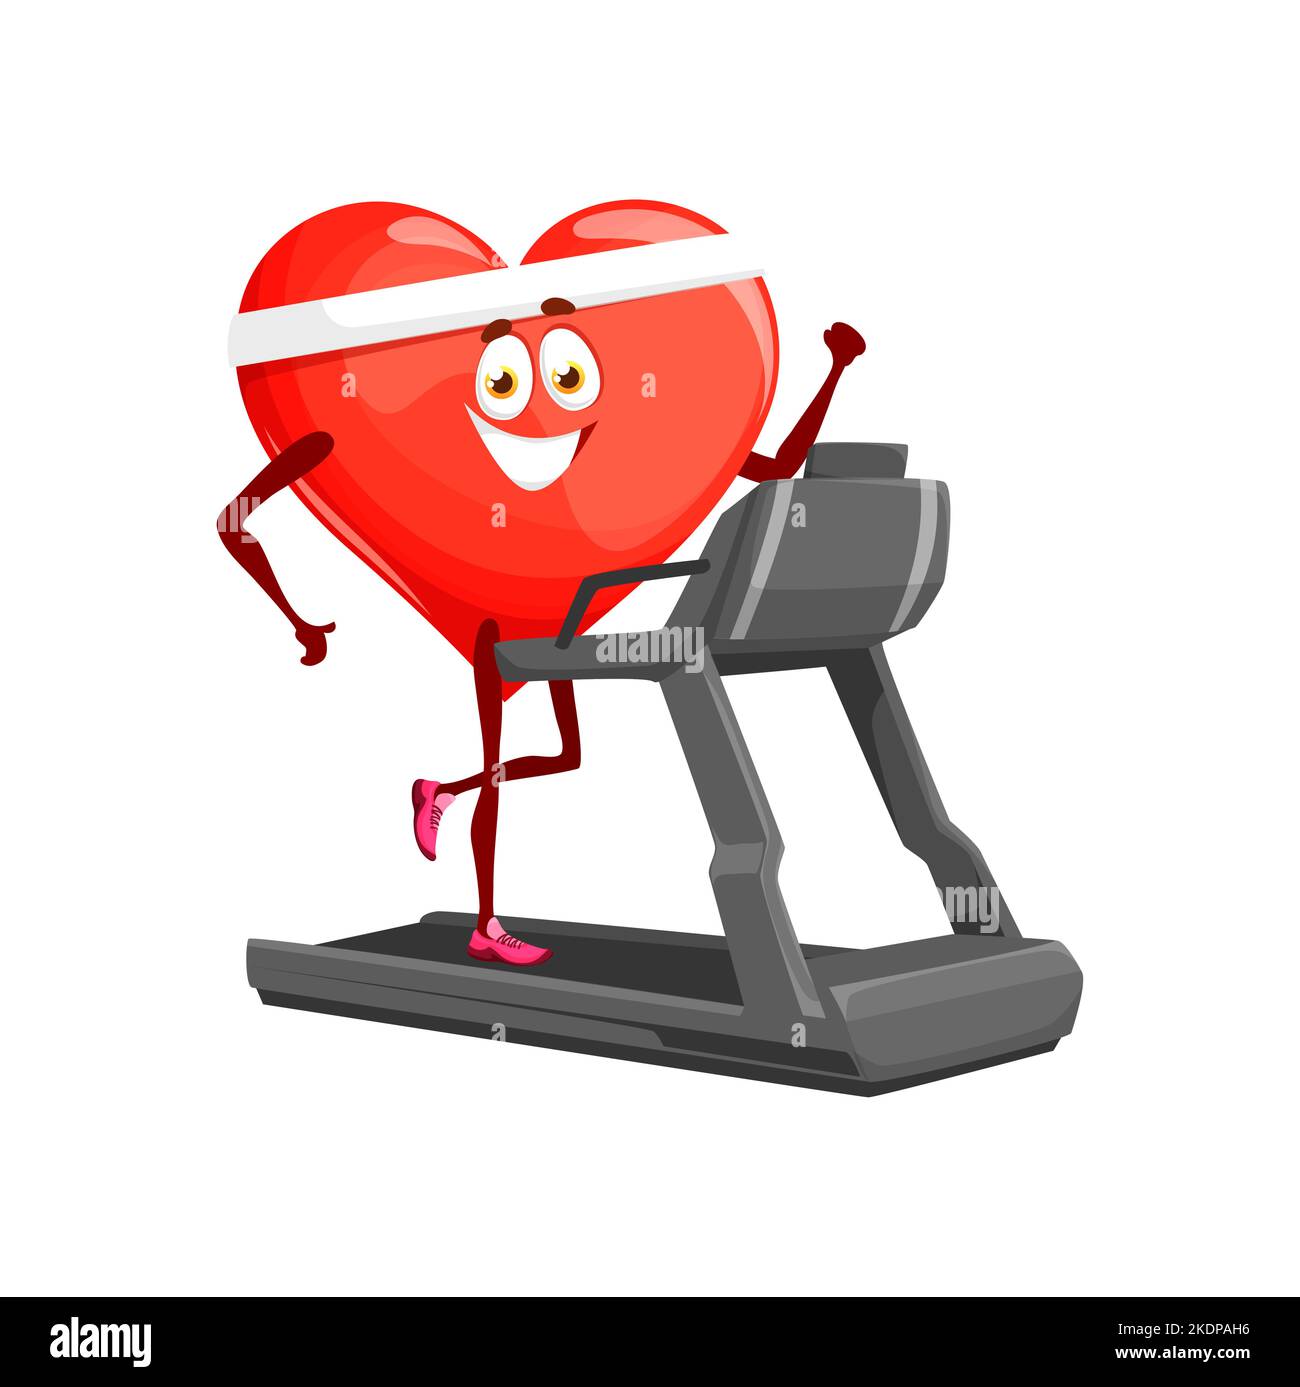 Cartoon Running Heart auf dem Laufband. Isolierte Vektor-Organ Charakter gesunden Lebensstil. Personage Training im Fitnessstudio, um gesund, fit und stark zu bleiben. Prävention von Herzinfarkten, Herz-Kreislauf-Training Motivation Stock Vektor